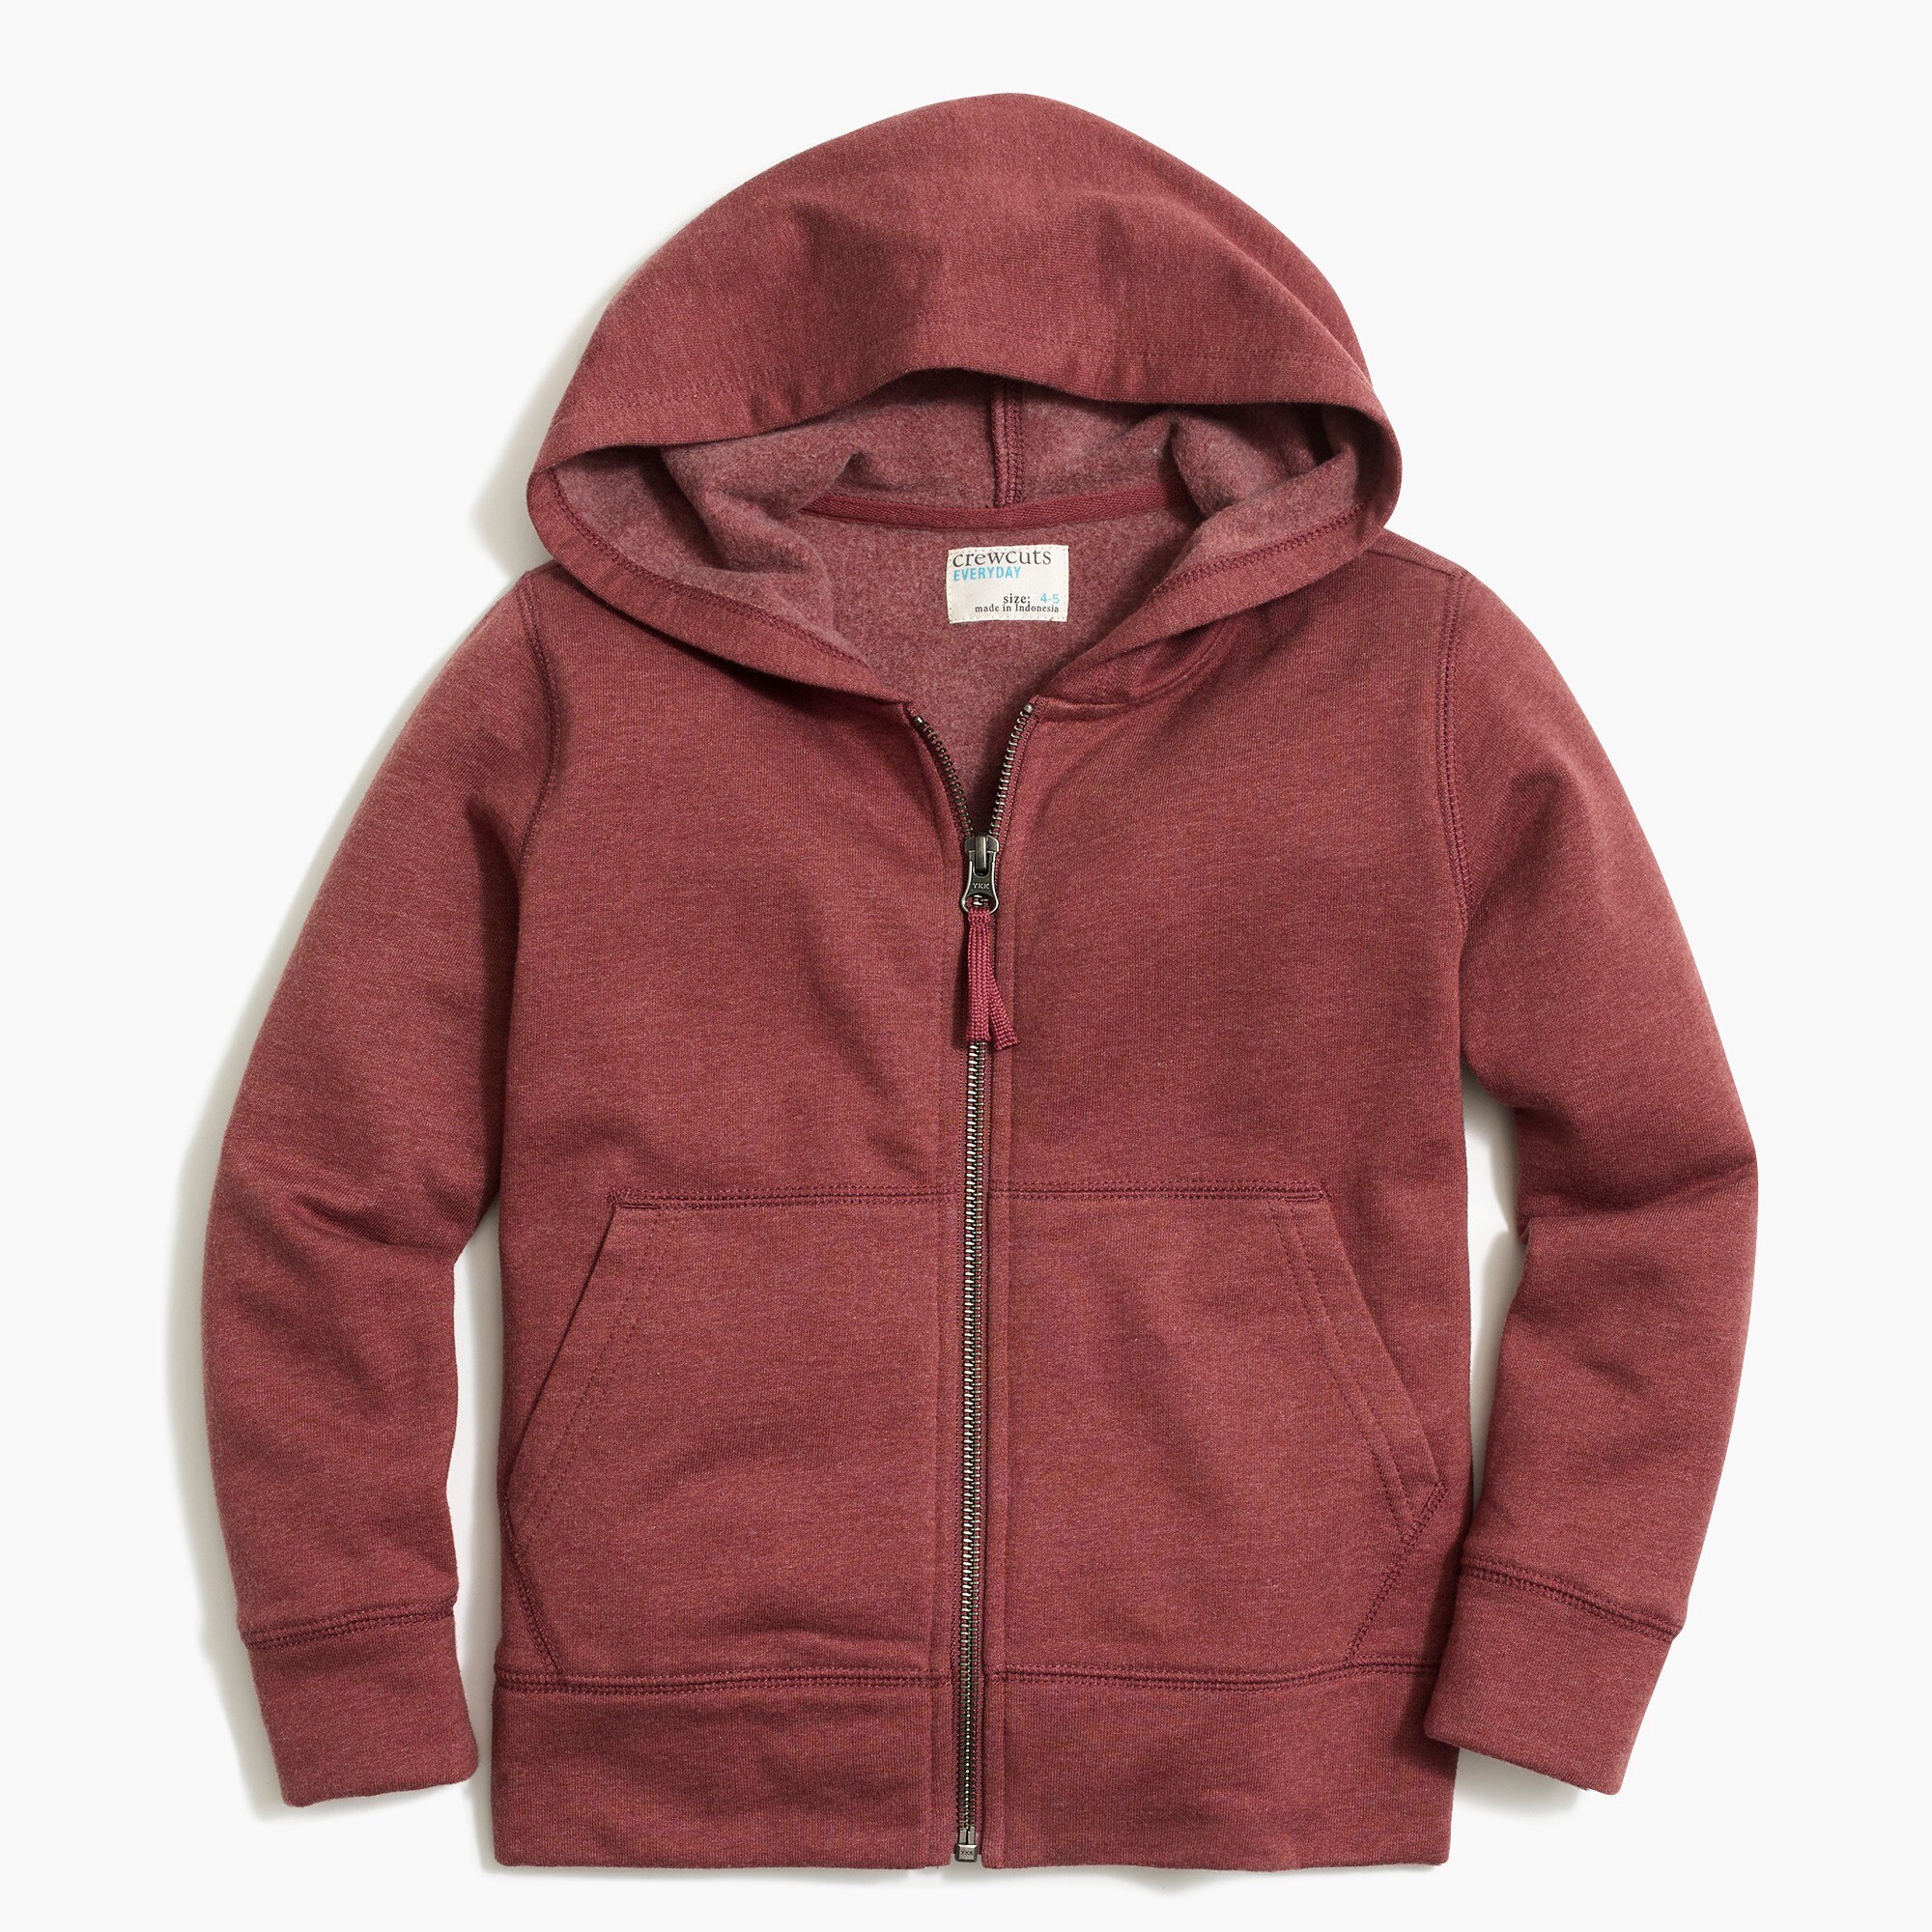 J.Crew Factory: Kids' long-sleeve full-zip hoodie with contrast cord